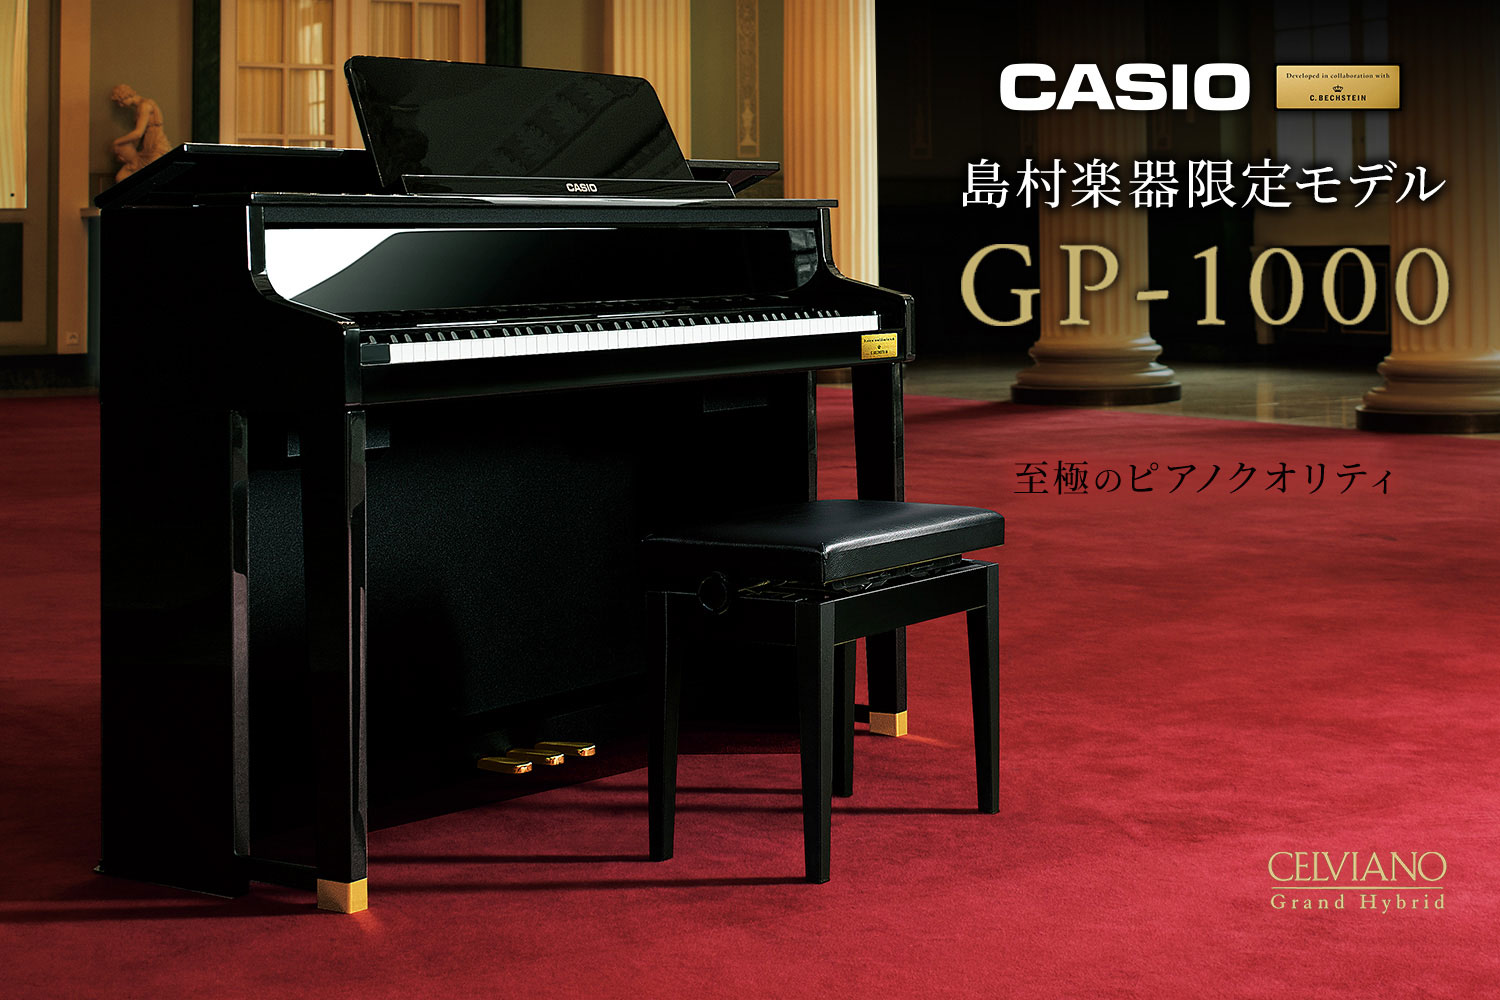 こんにちは。ピアノ担当の小村です！今回は発売から大人気のCASIOハイブリットピアノ「GP-1000」の魅力を徹底分析していきます。発売から4年が経ちますが、いまだに人気No.1のモデルといっても過言ではありません！商品の特徴をご紹介した後、アミュプラザ鹿児島店のピアノ経験者が様々な楽曲を弾き比べて […]